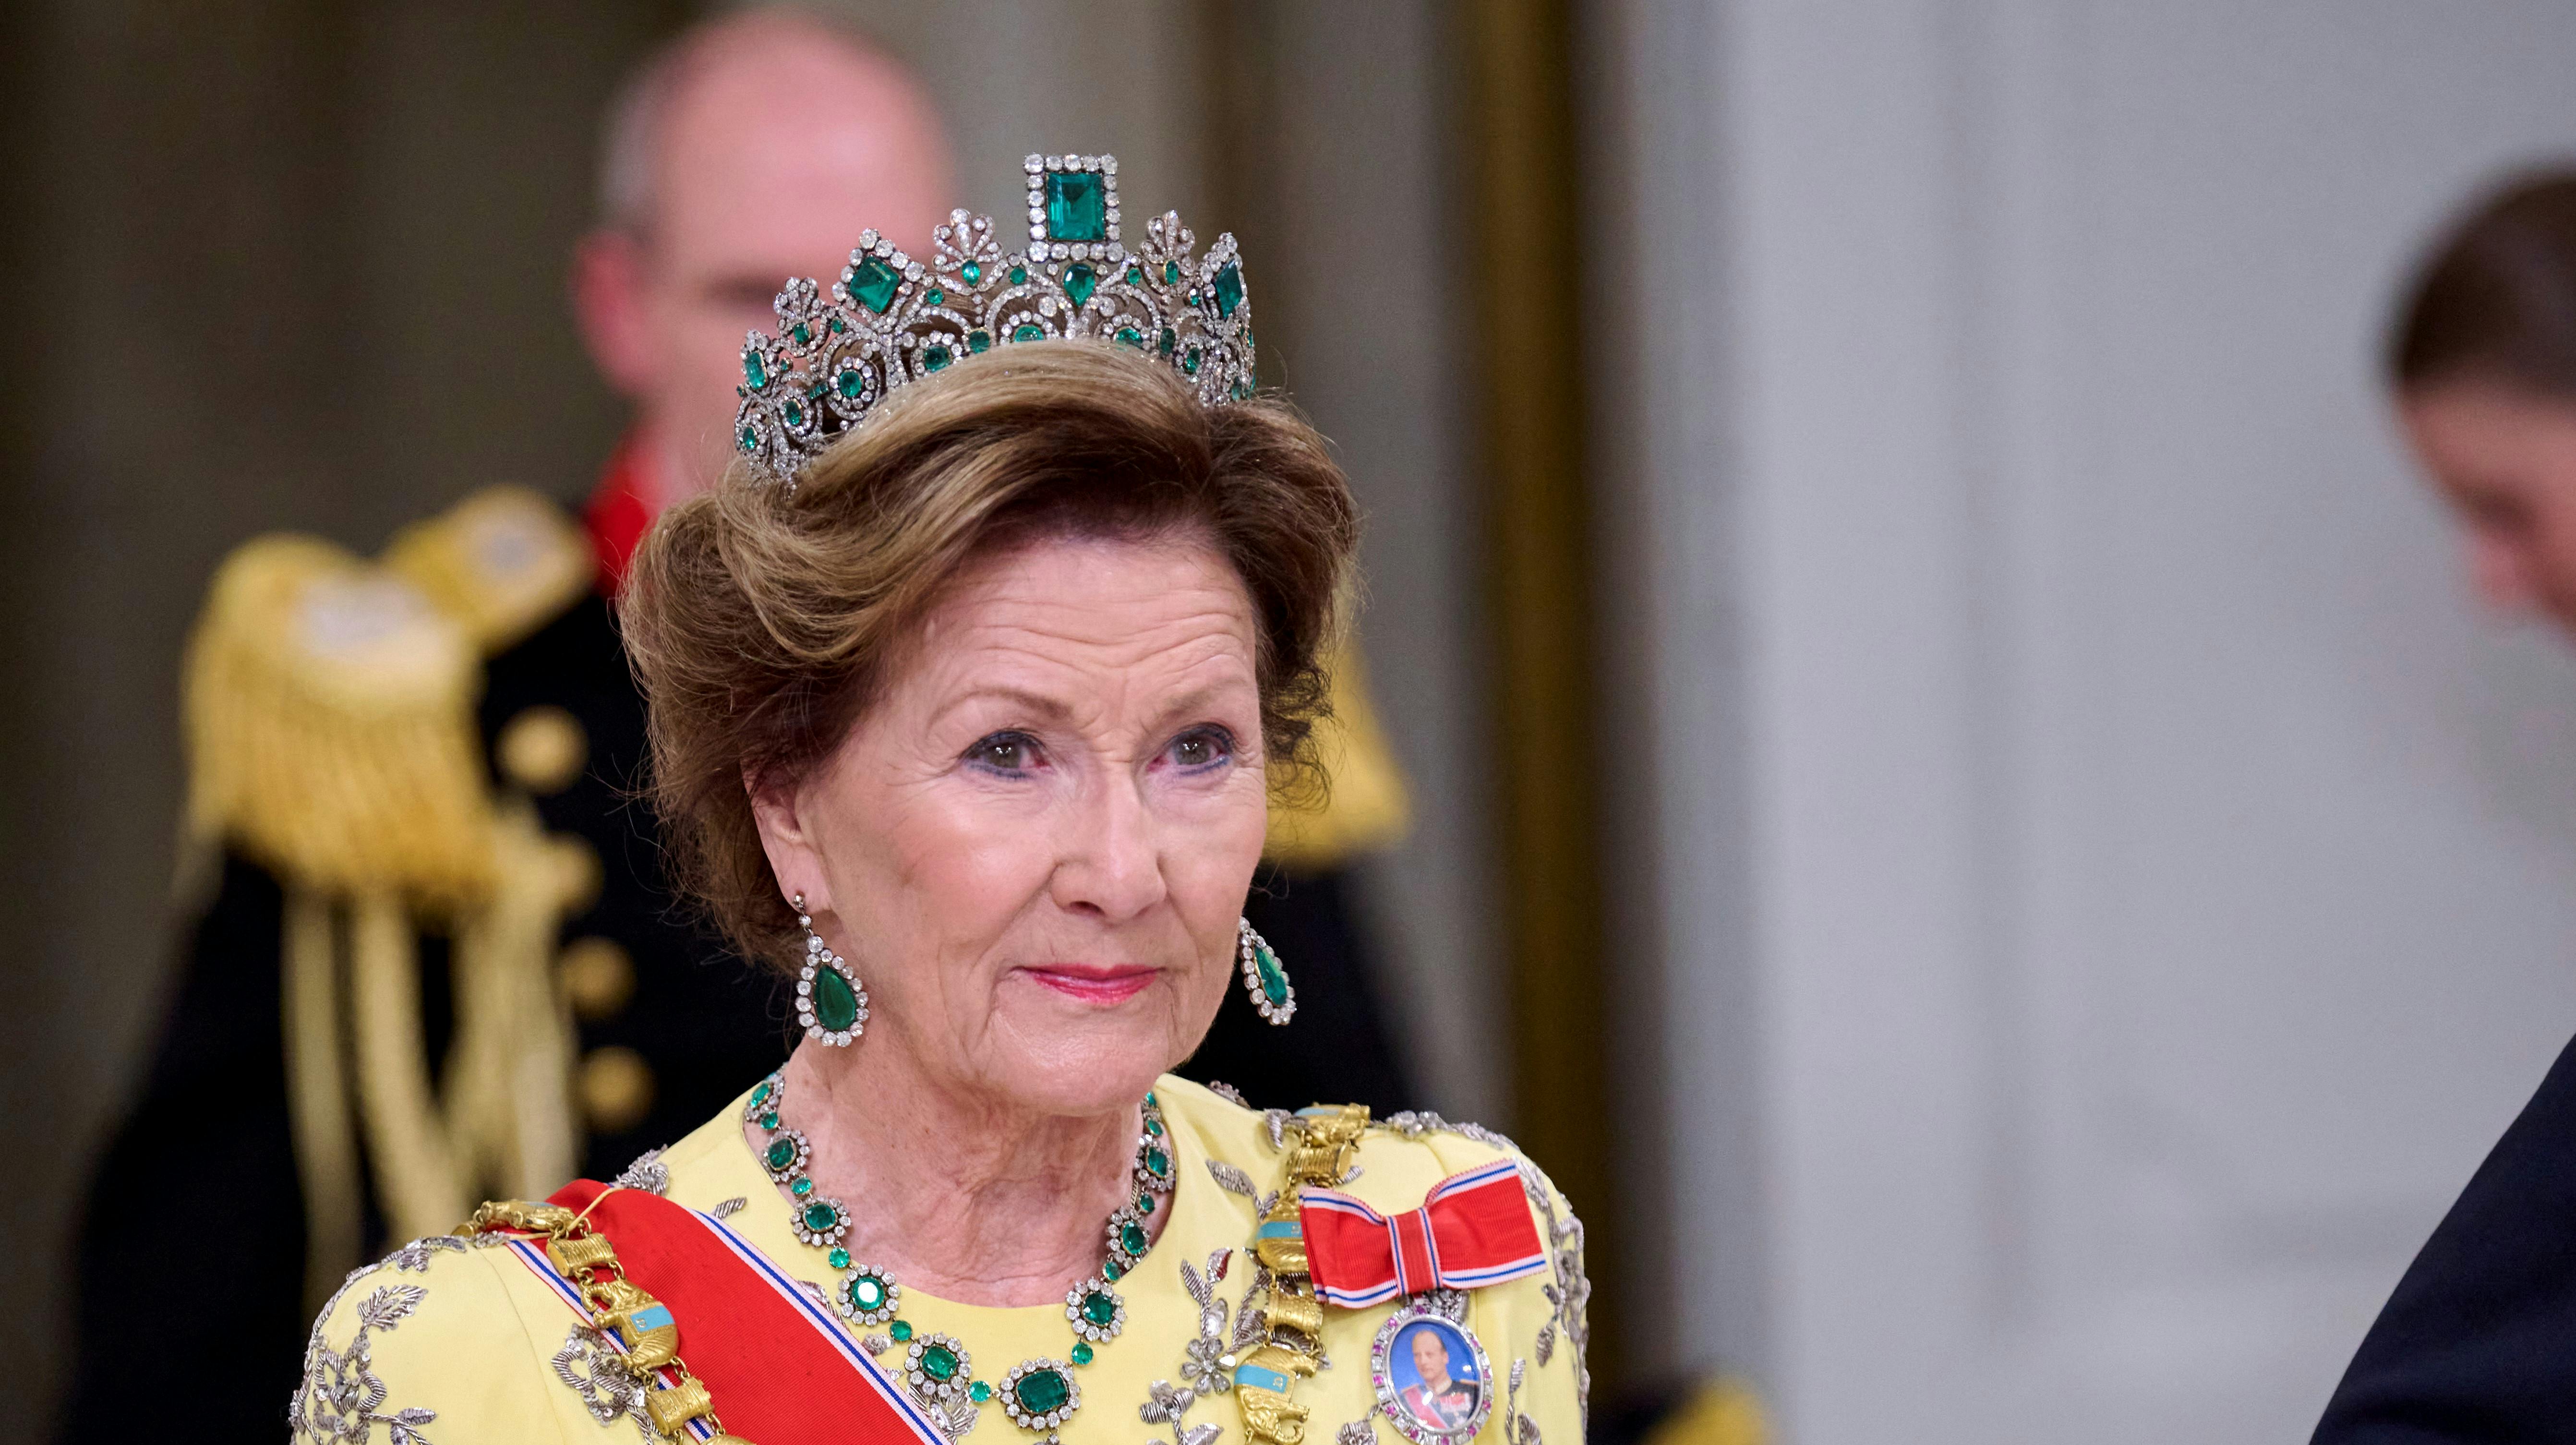 Dronning Sonja af Norge har to gange i sit liv måtte abortere. Her ses hun ved dronning Margrethes 50-års regeringsjubilæum sidste år.